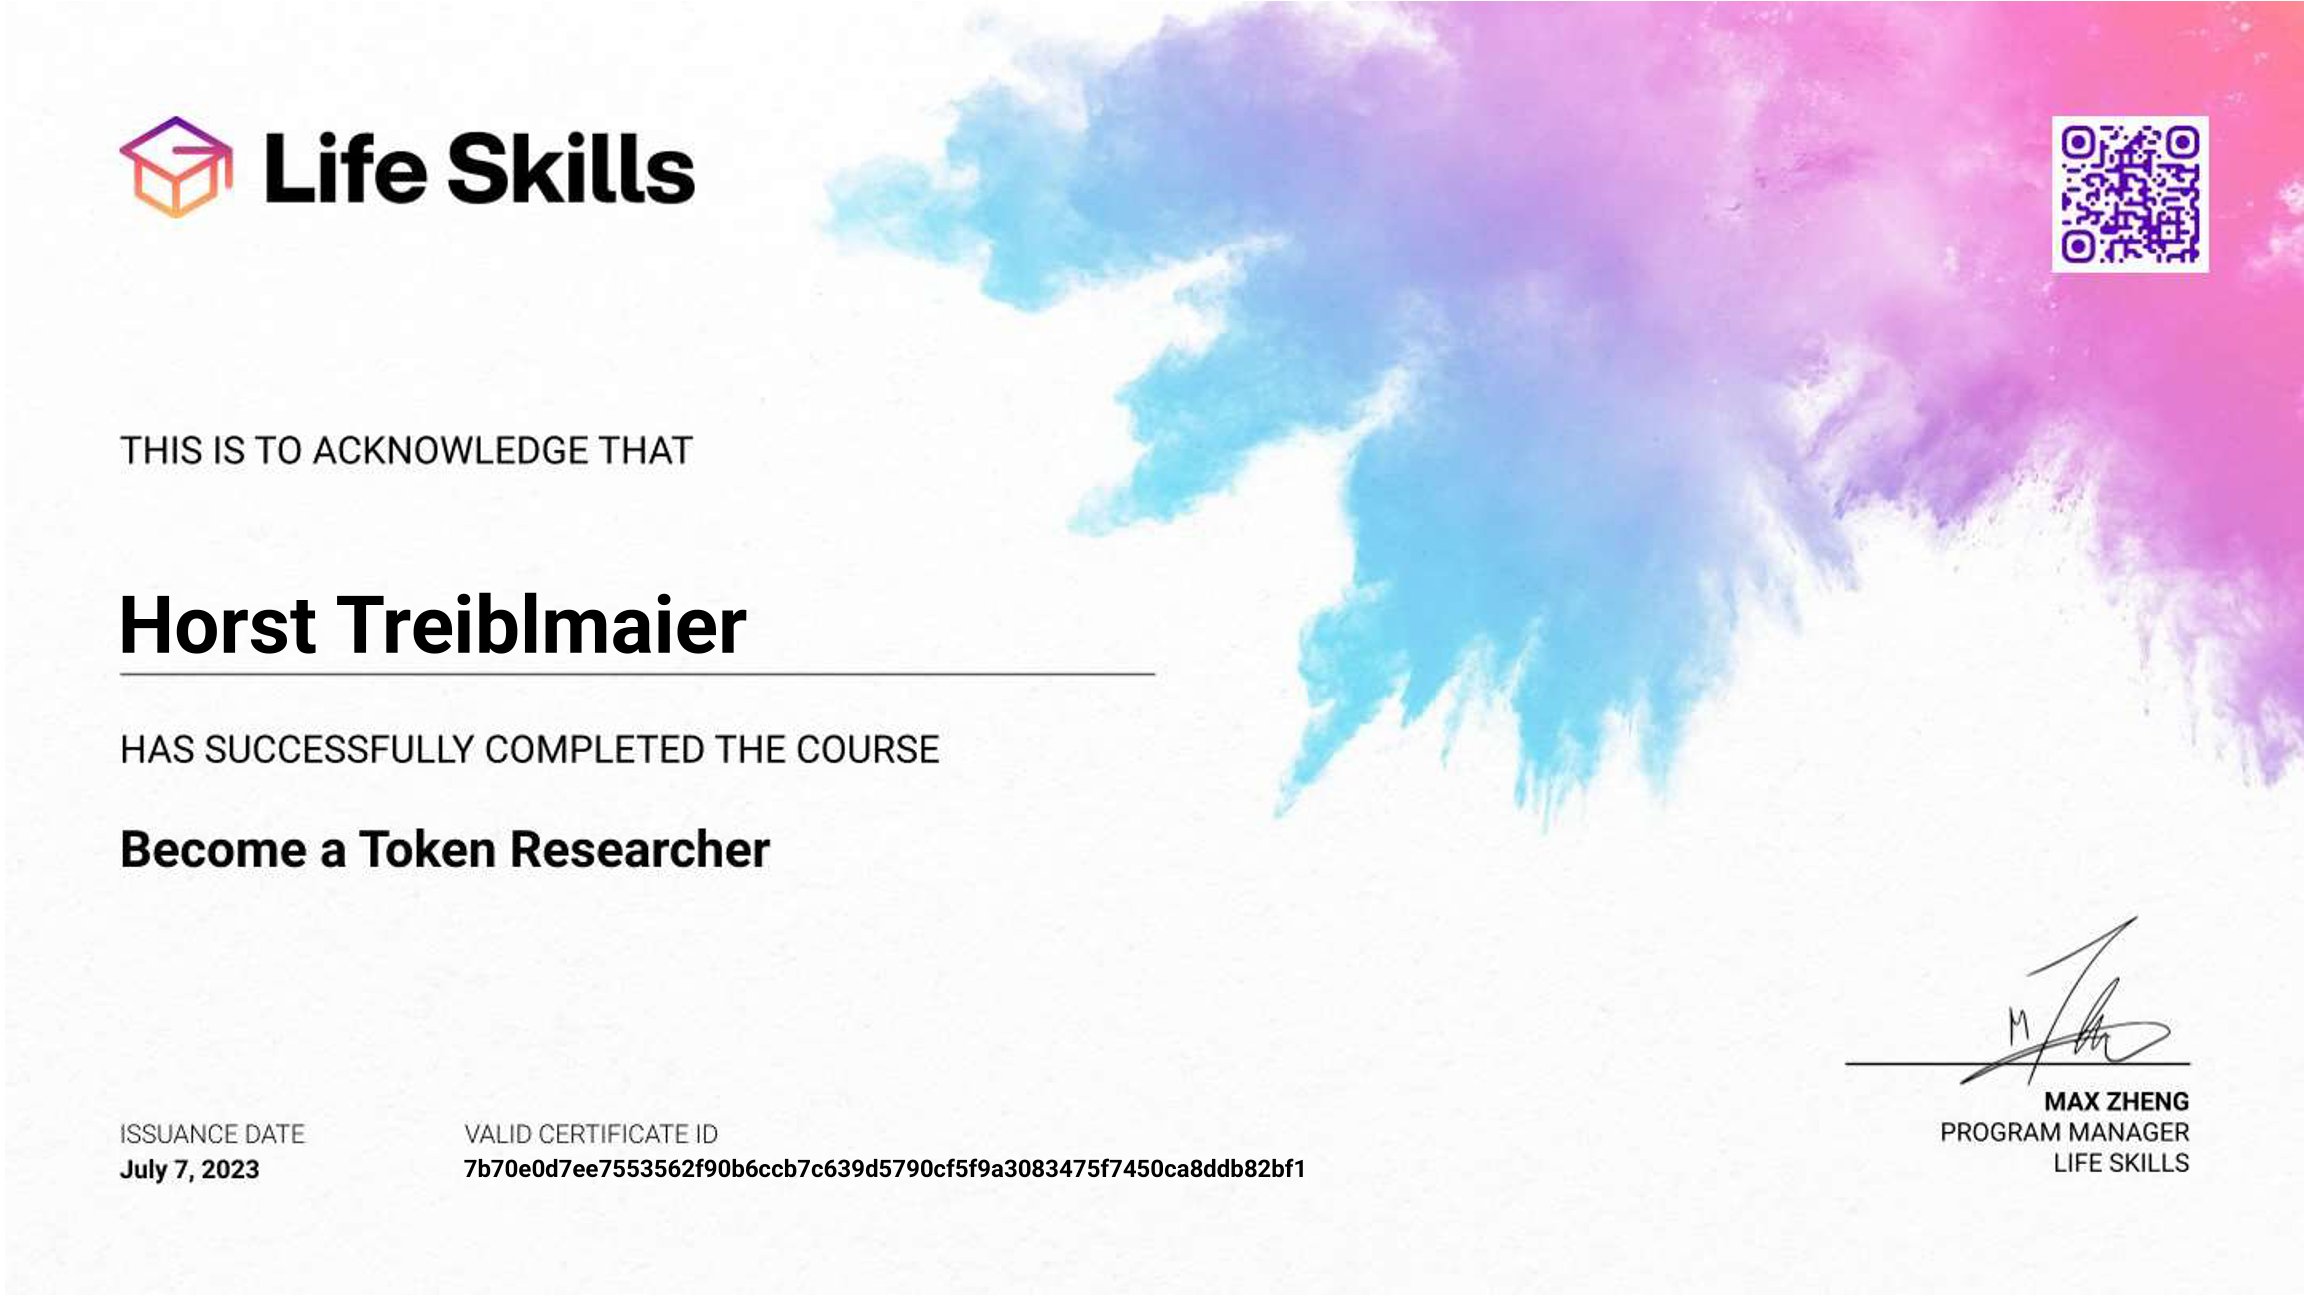 Life Skills - Become a Token Researcher - Horst Treiblmaier - Certificate